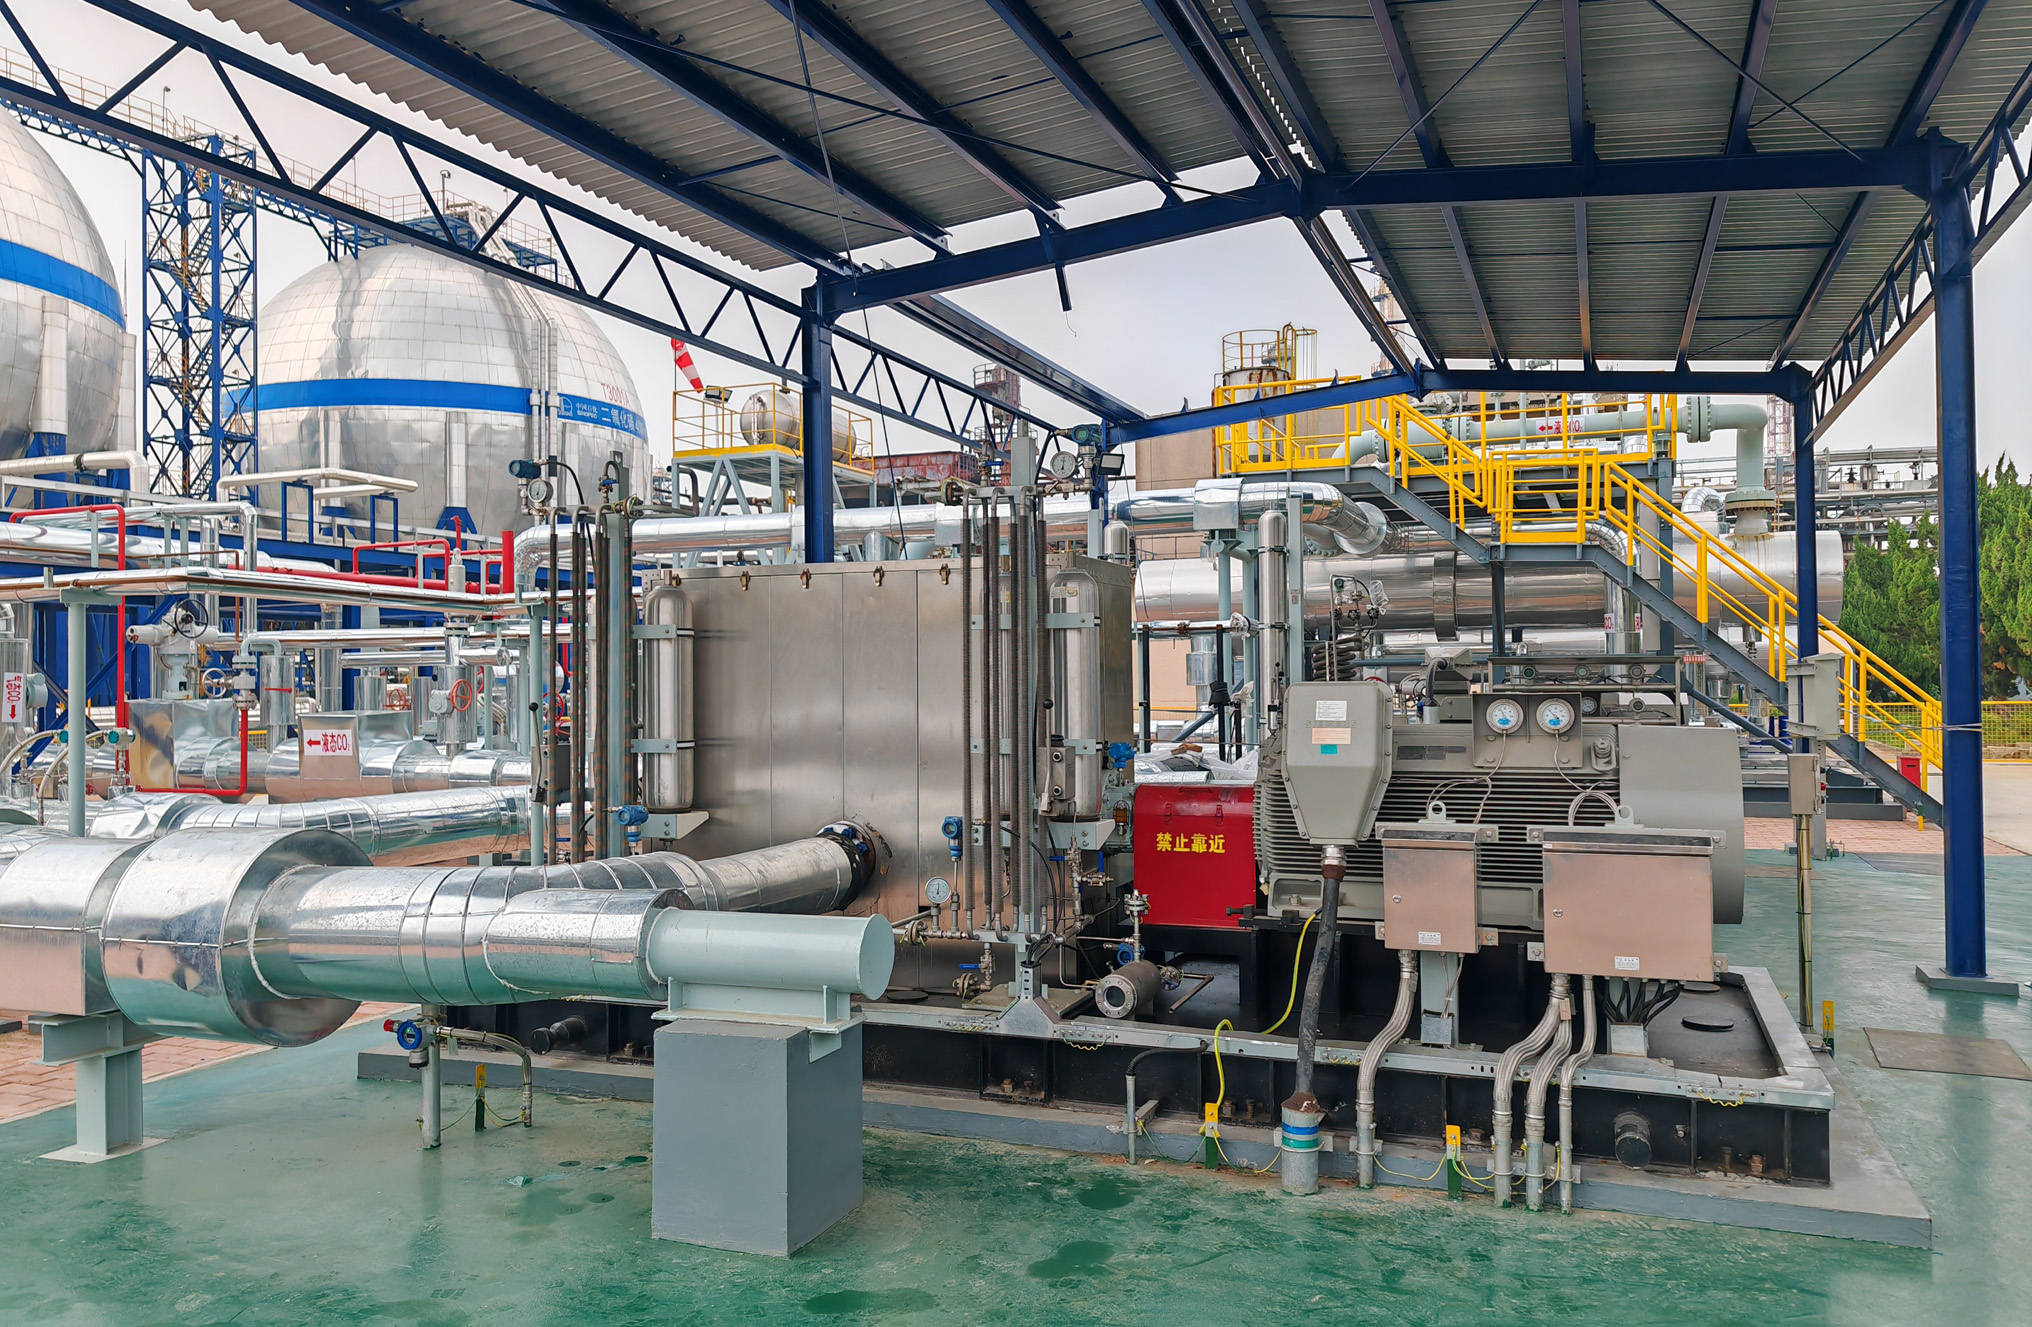 3777金沙娱场城—国产化首台套百万吨级CCUS二氧化碳管输增压泵稳定投运